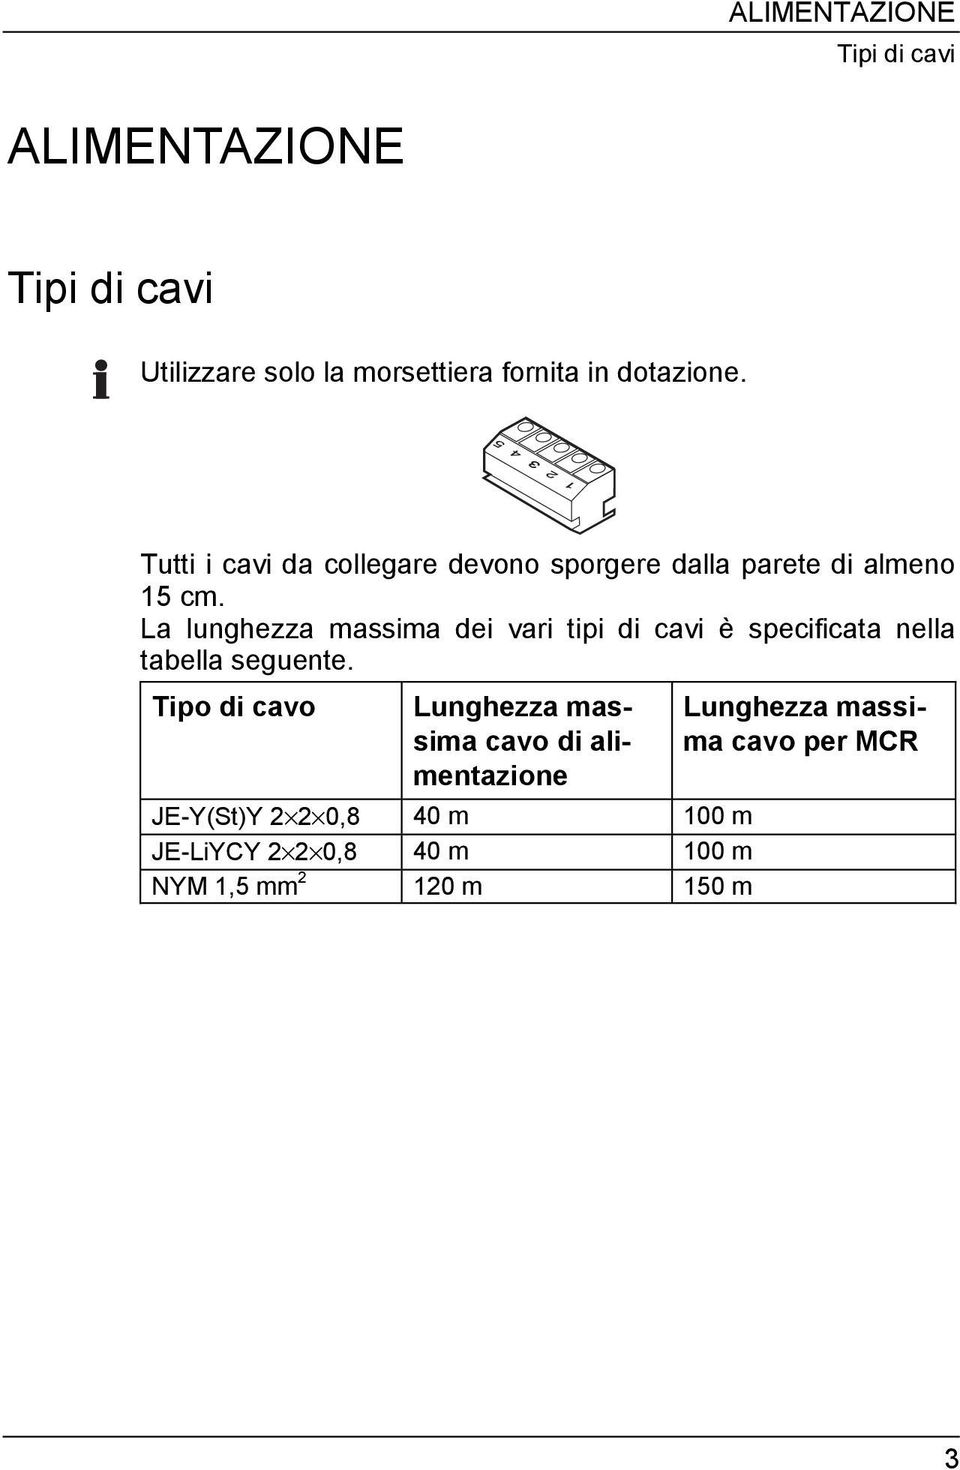 La lunghezza massima dei vari tipi di cavi è specificata nella tabella seguente.